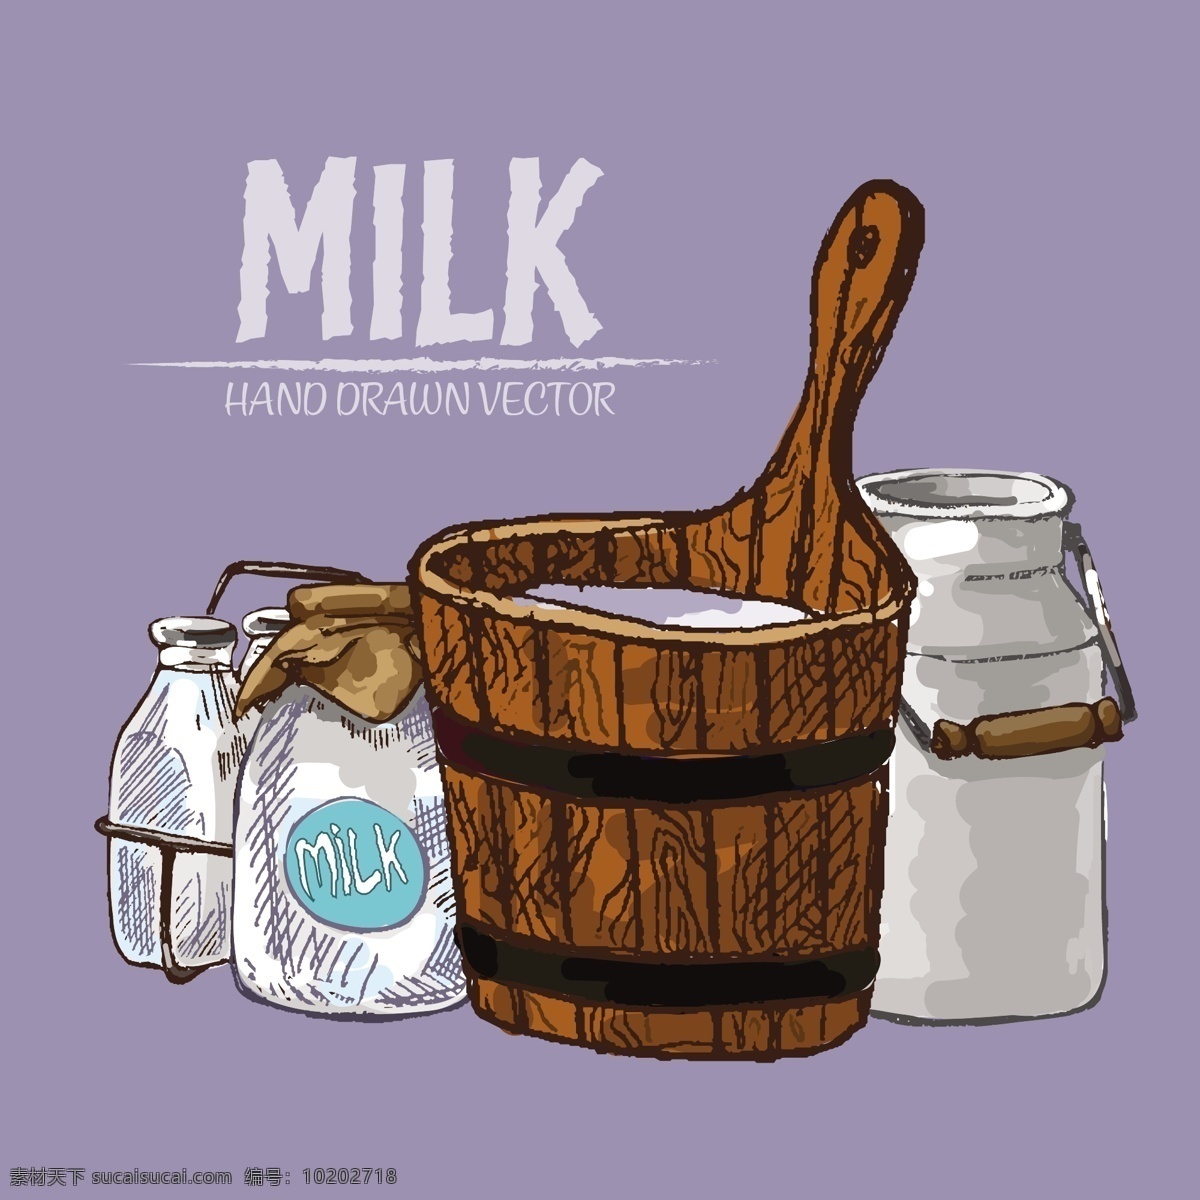 手绘牛奶 手绘 牛奶 牛奶制品 牛奶背景 牛奶素材 牛奶瓶 牛奶盒 食品蔬菜水果 生活百科 餐饮美食